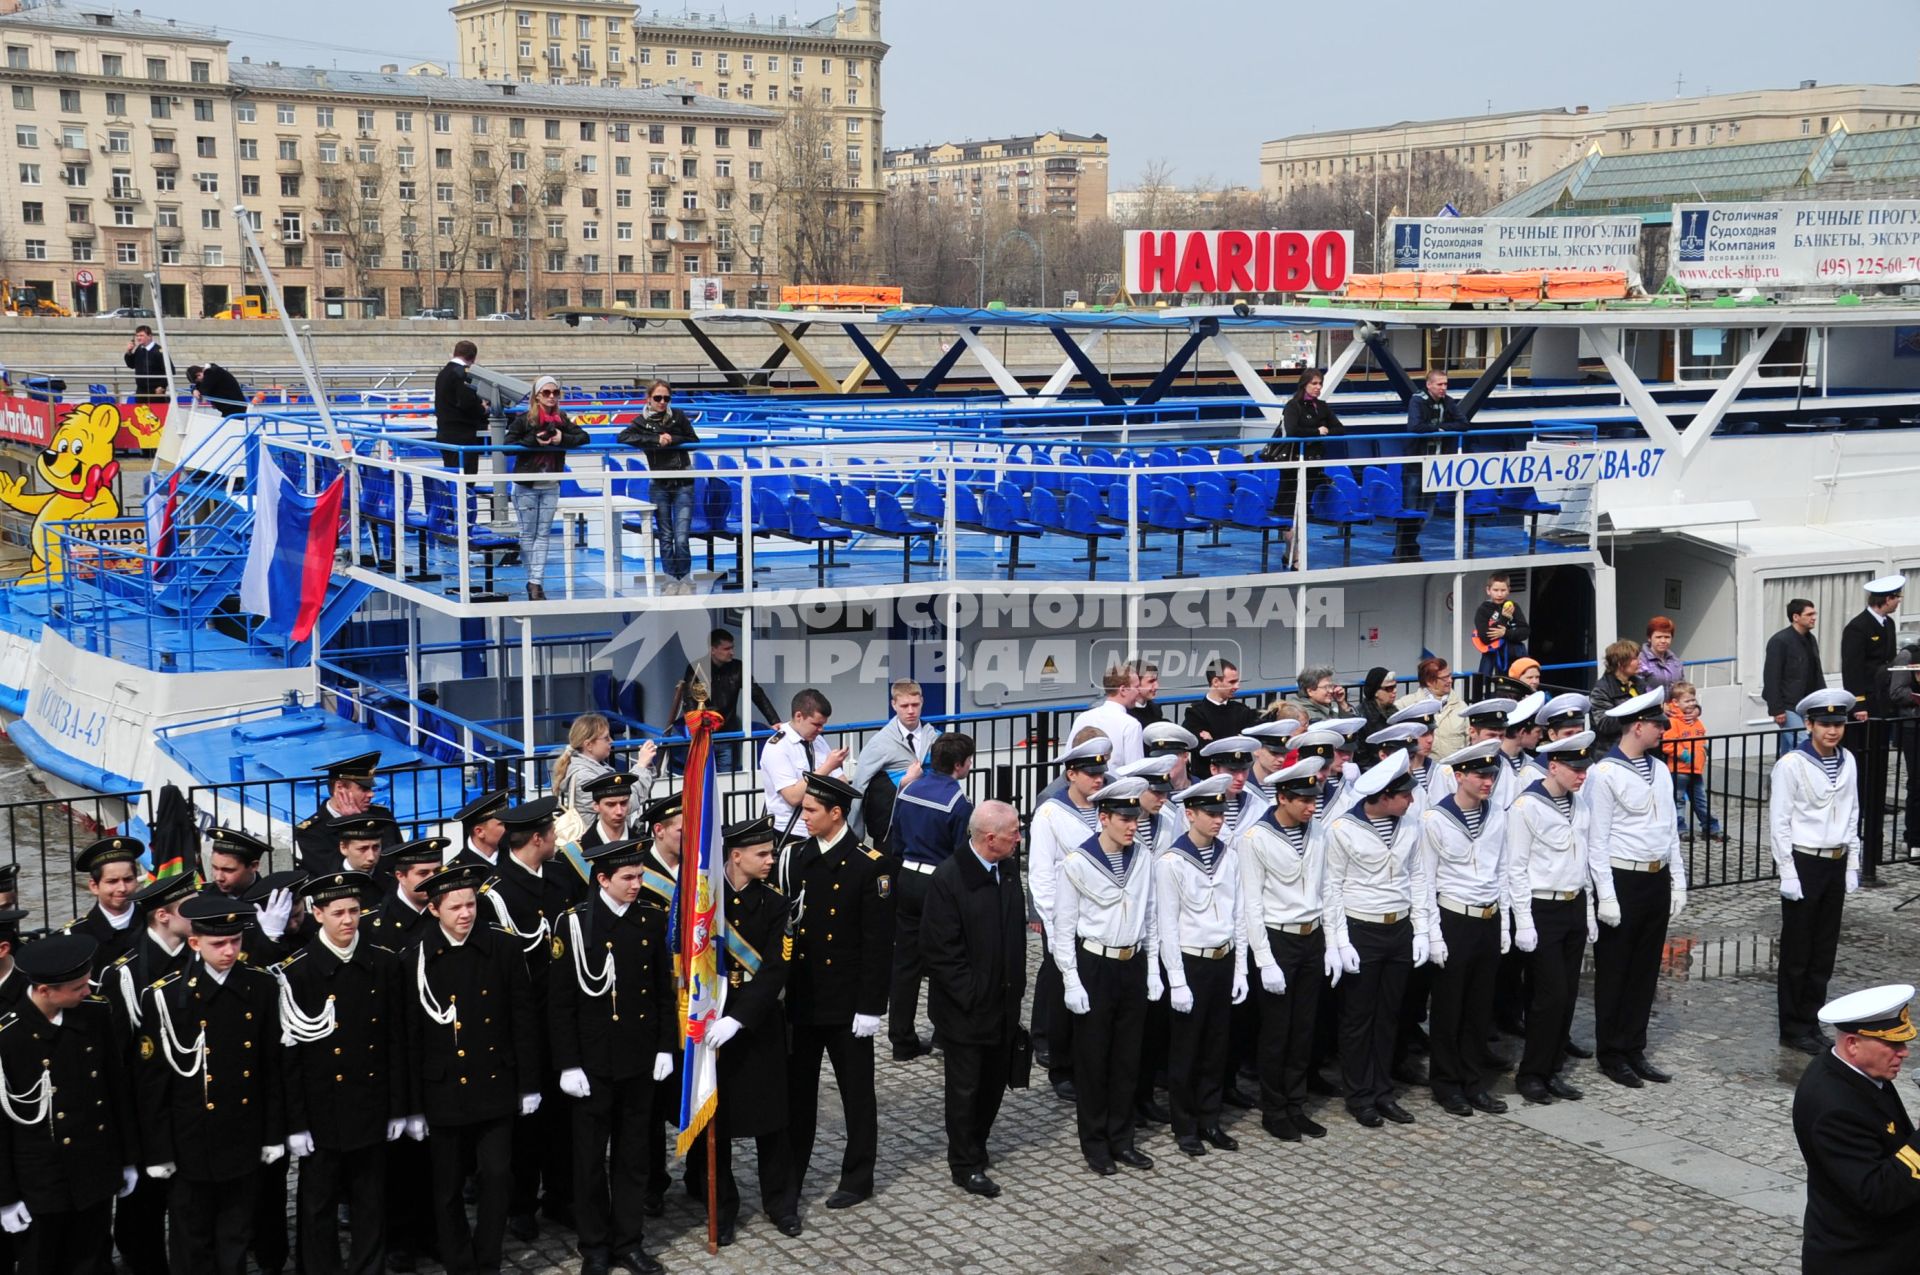 Открытие пассажирской навигации на Москве-реке. На снимке: торжественное построение на набережной.